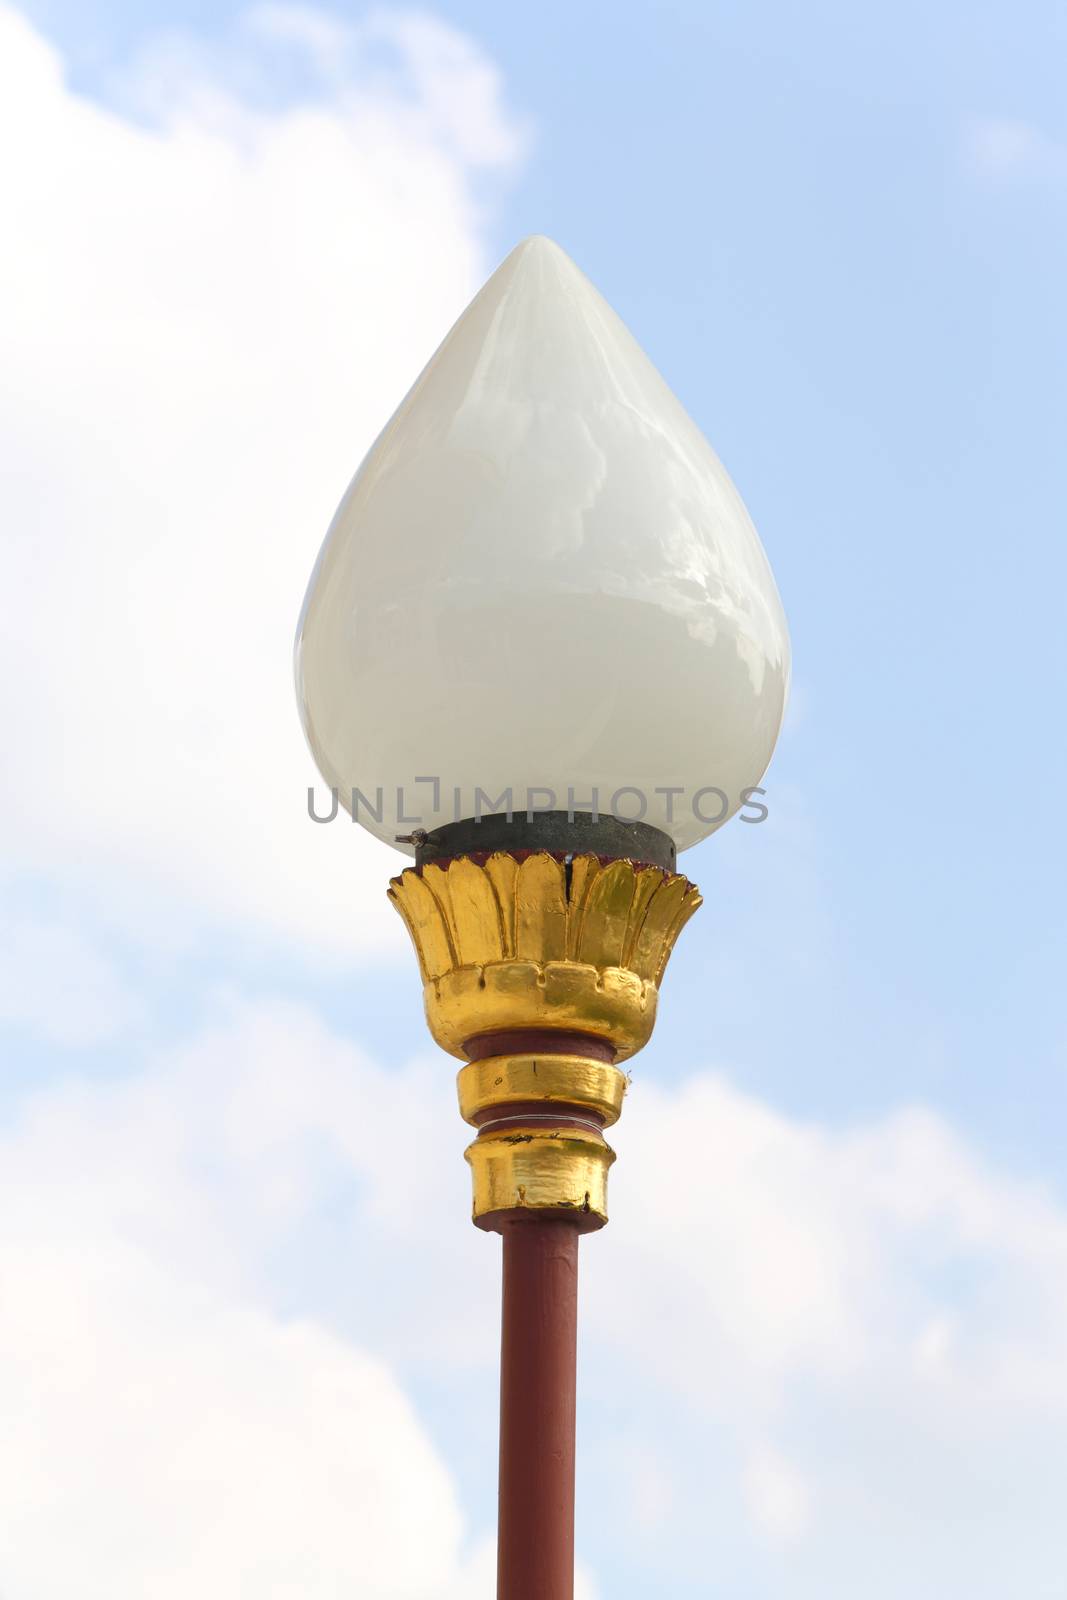 Elegance street lamp isolated on sky